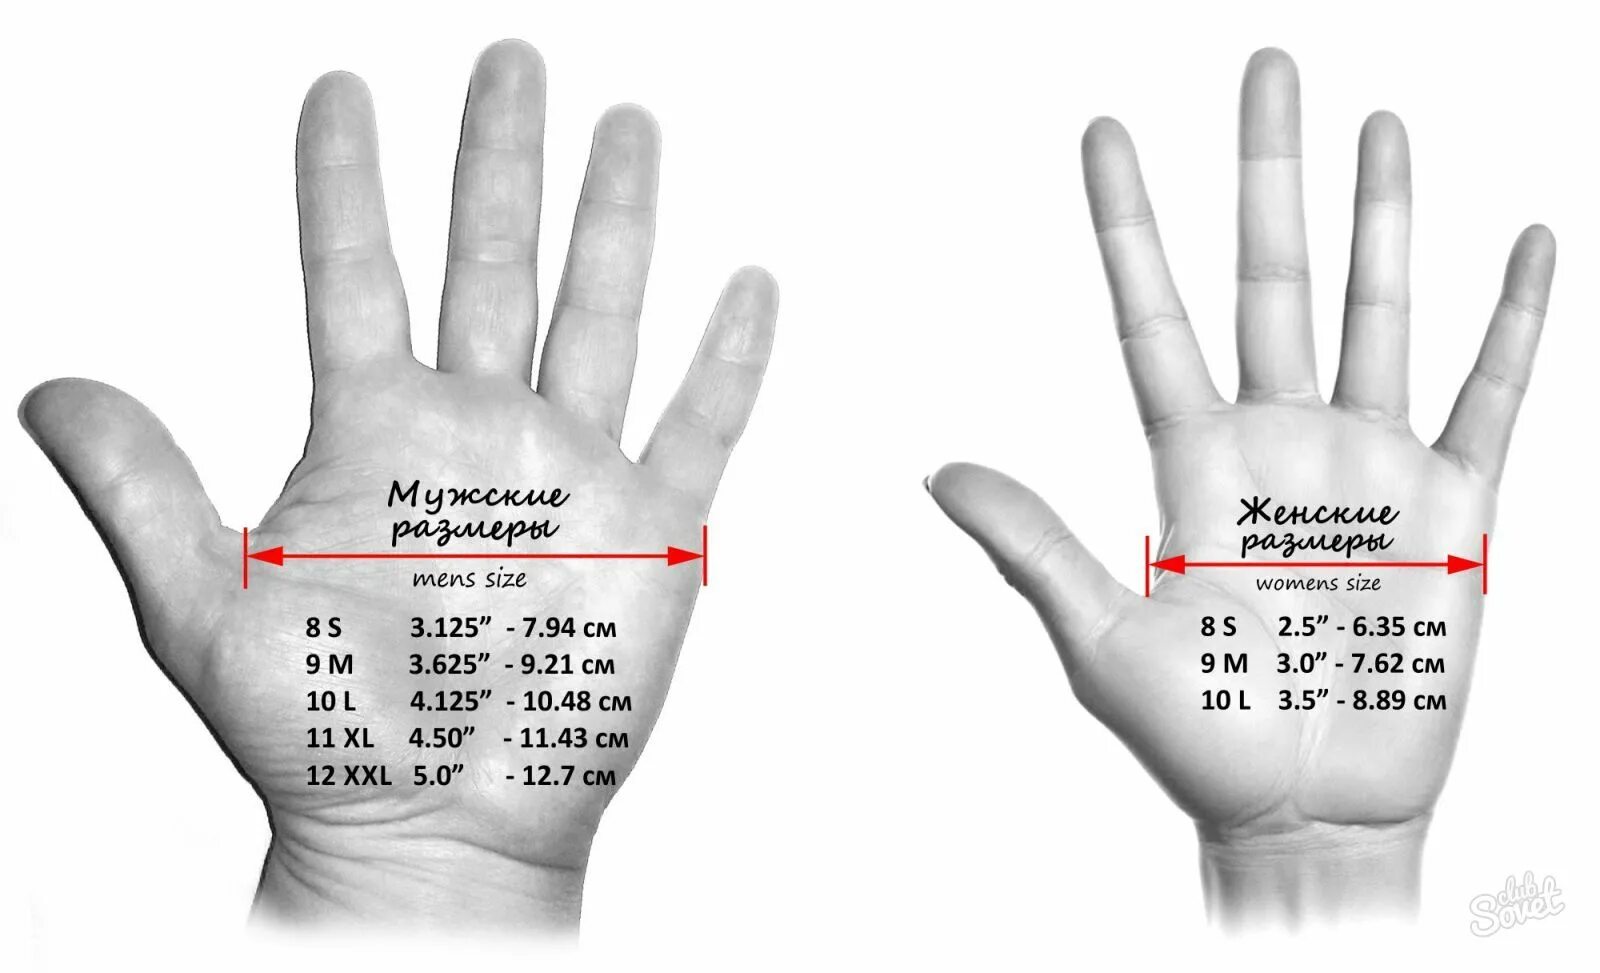 Сколько сантиметров рука. Как измеряется обхват ладони для перчаток. Как правильно измерить обхват ладони для размера перчатки. Как узнать размер кисти для перчаток. Как измерить размер ладони для перчаток мужчин.